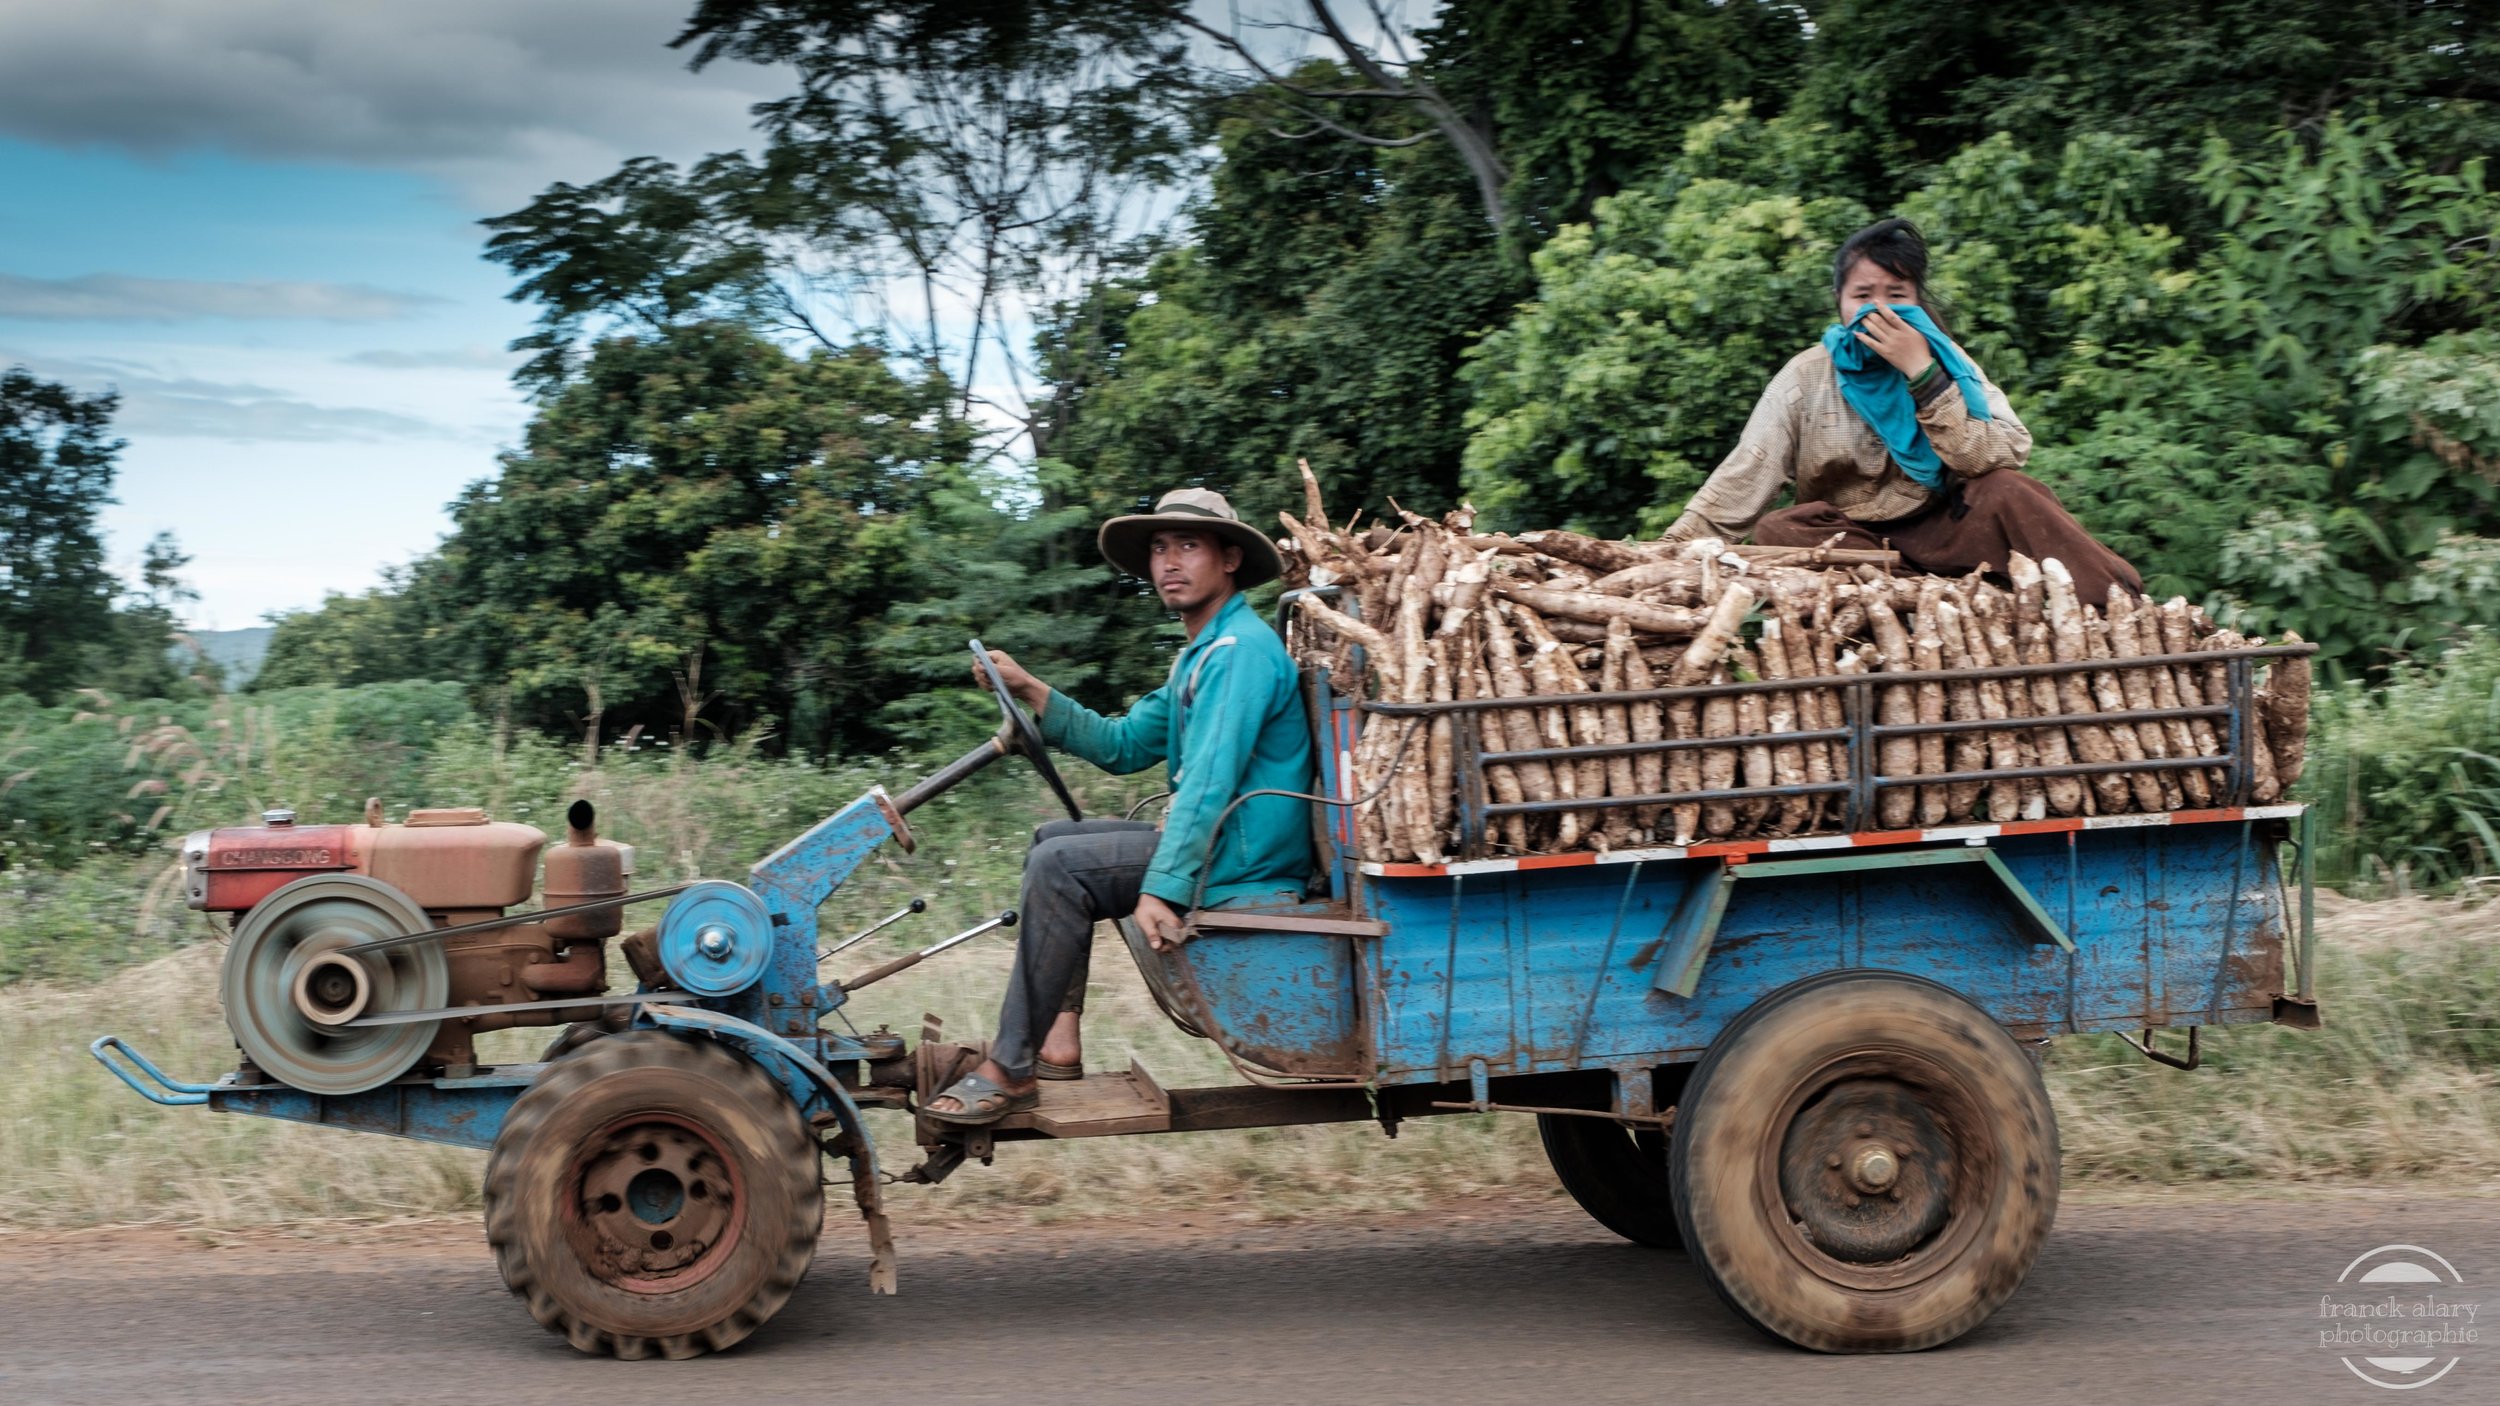   Transport du manioc vers la coopérative.   Les principales productions agricoles du Laos sont le riz, le café, le coton, l'opium et le maïs.&nbsp;Le pays est miné. Selon les experts, plusieurs dizaines de millions de bombes non explosées, issues de